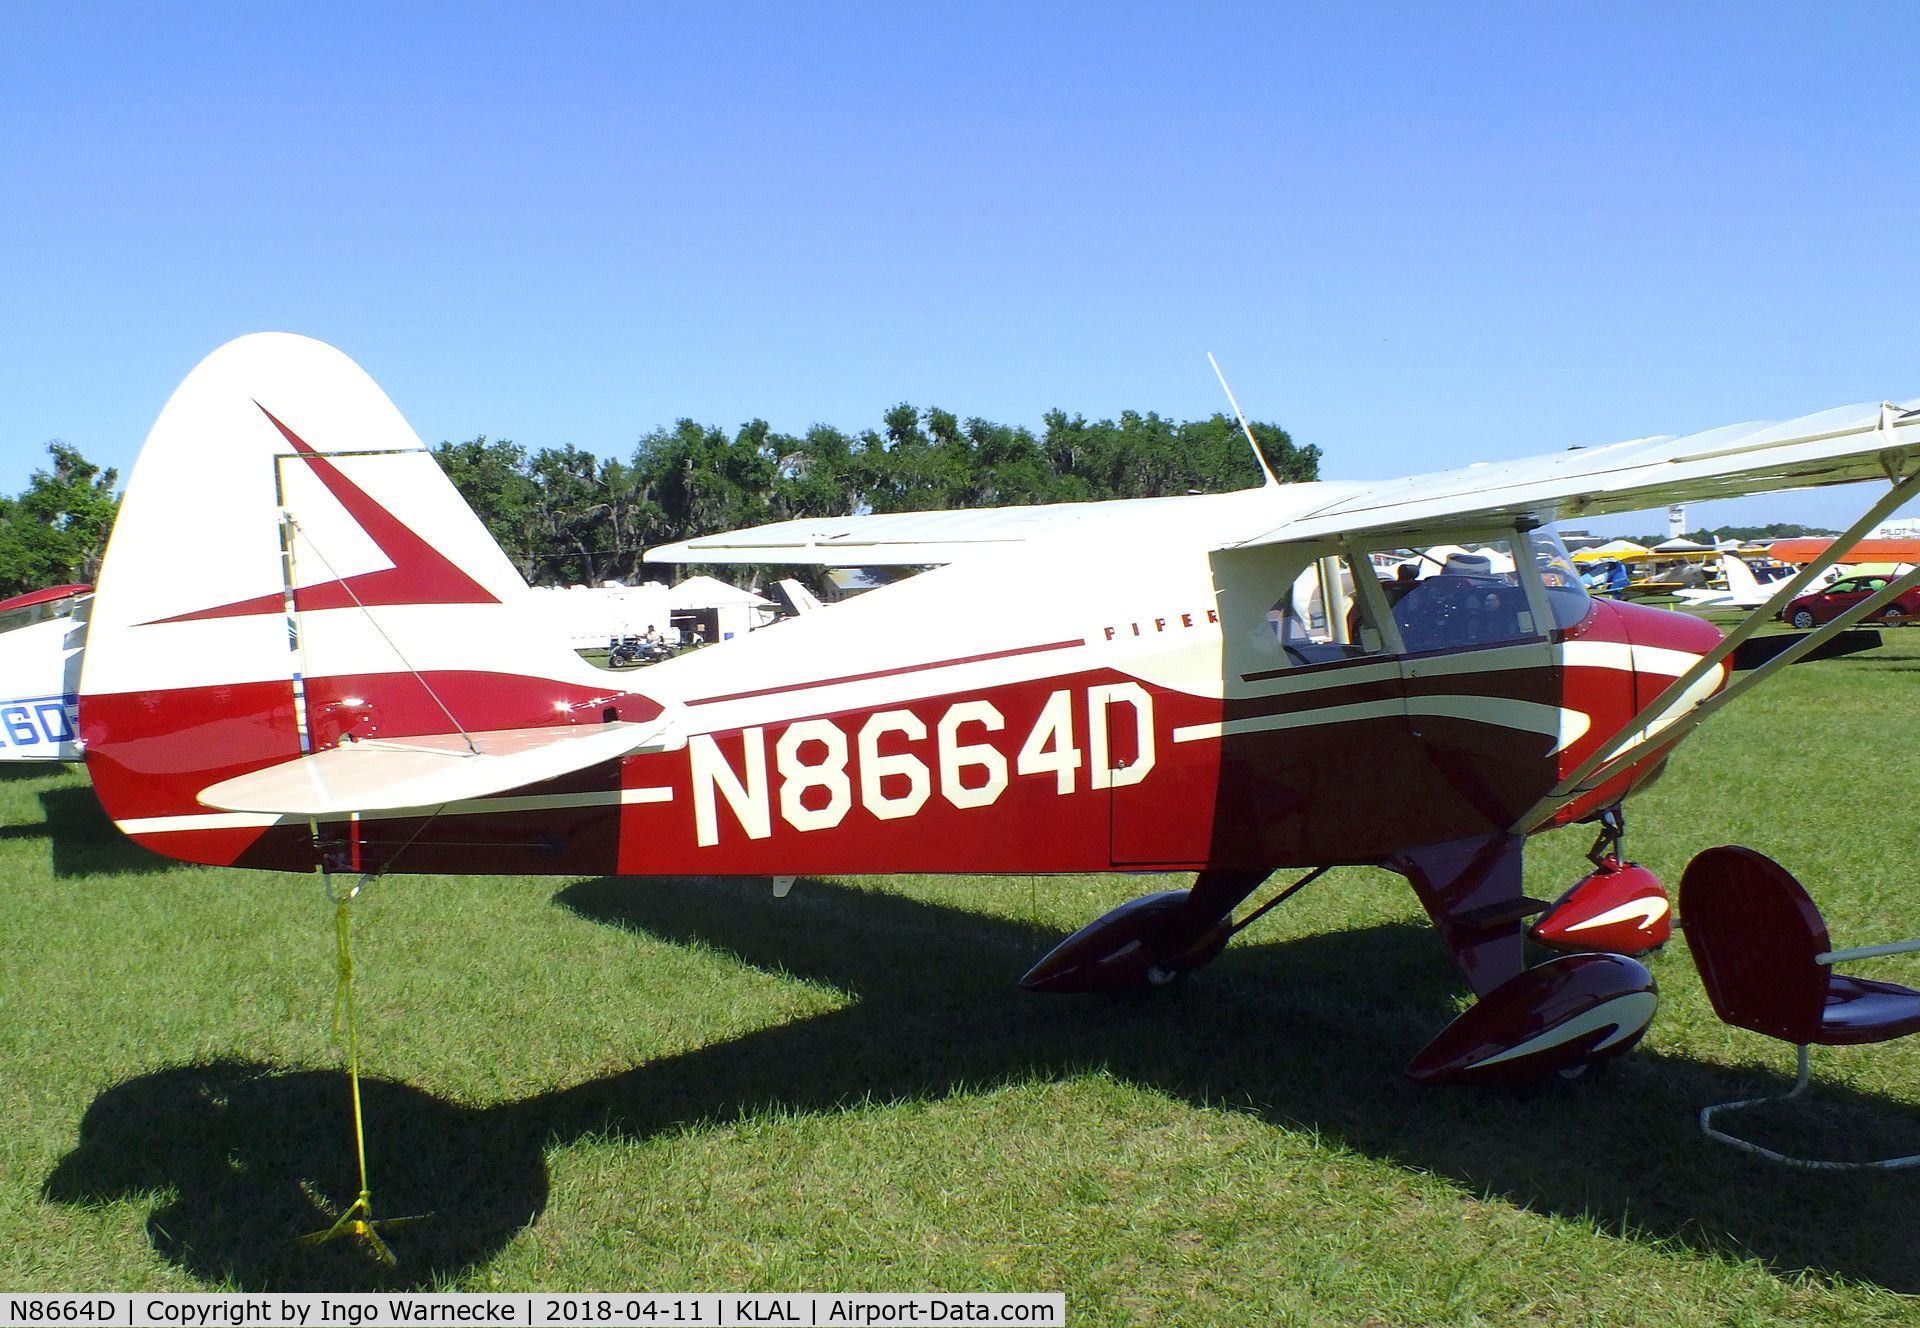 N8664D, 1958 Piper PA-22-160 Tri Pacer C/N 22-5872, Piper PA-22-160 Tri-Pacer at 2018 Sun 'n Fun, Lakeland FL